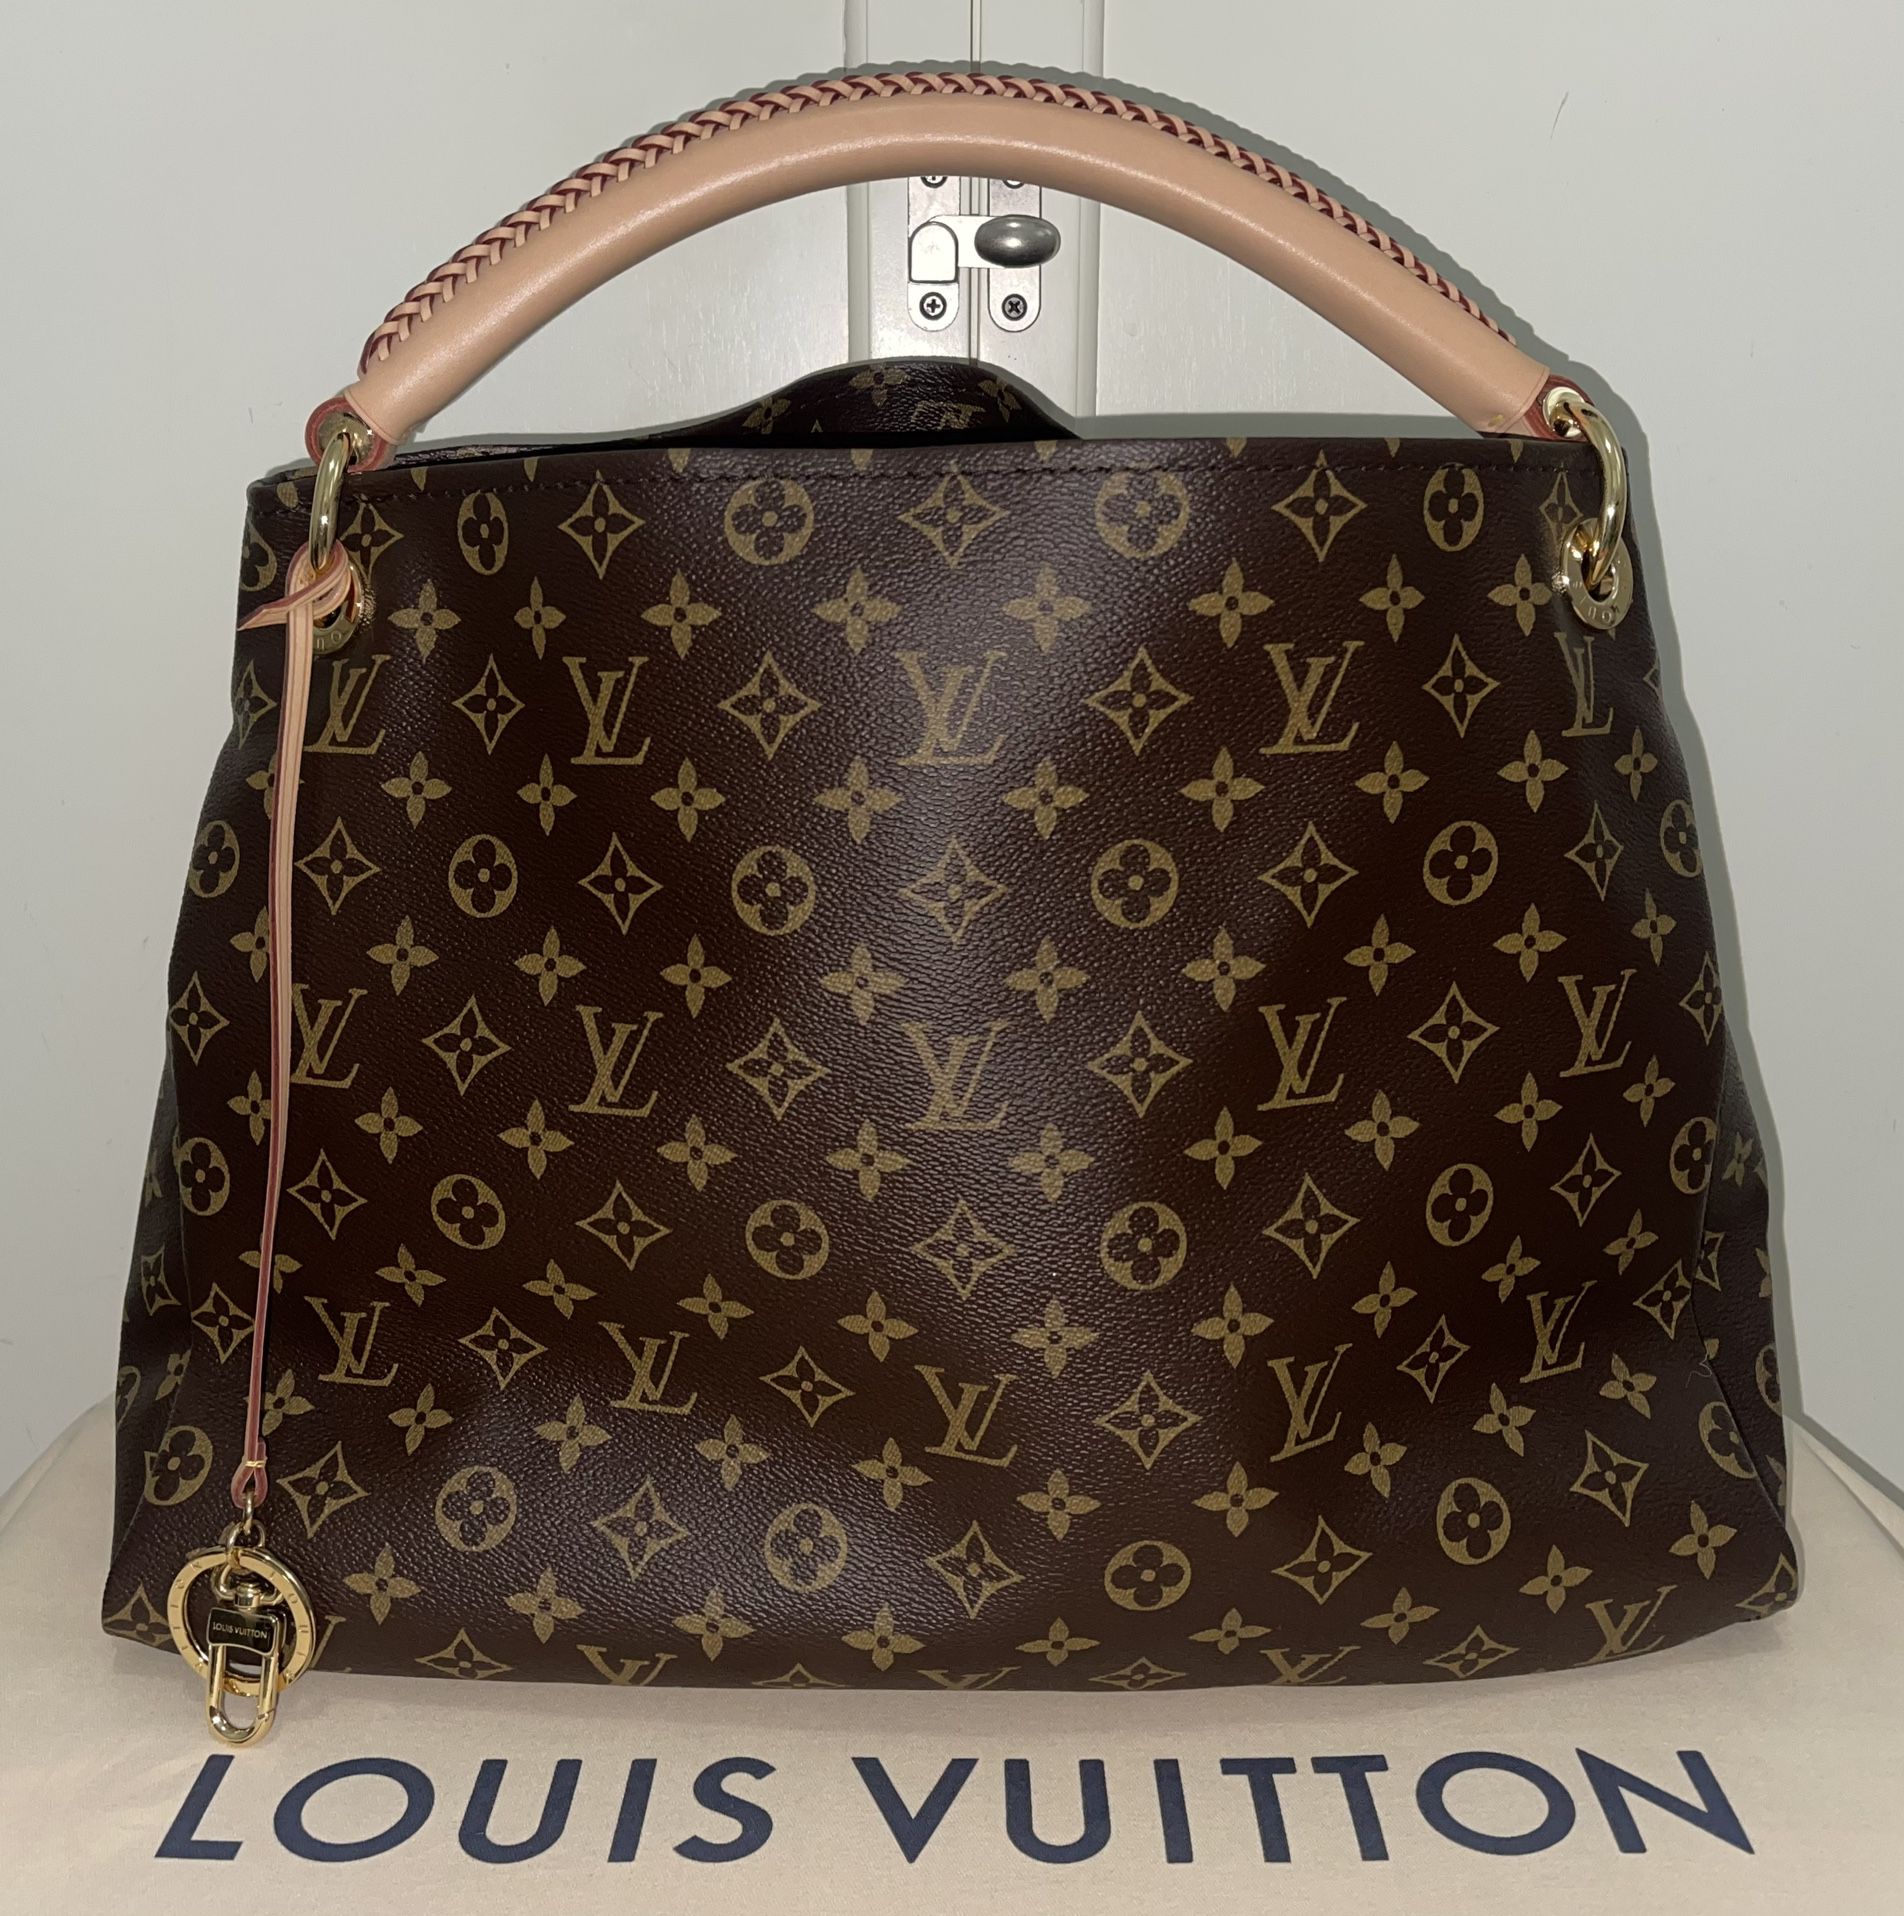 Louis Vuitton Siracusa GM bag for Sale in Fair Oaks Ranch, TX - OfferUp